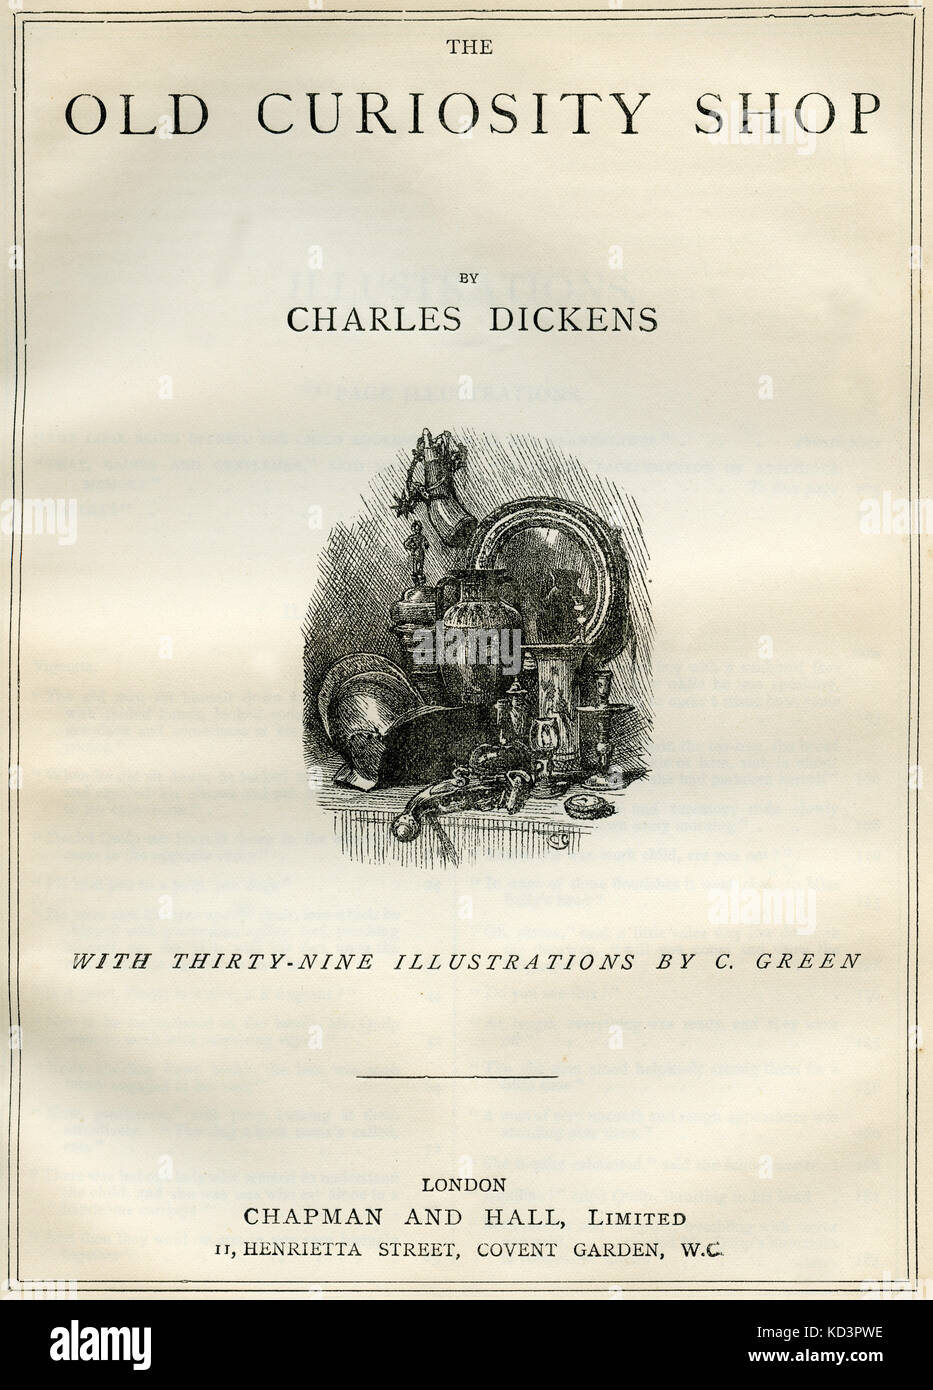 The Old Curiosity Shop by Charles Dickens Página de título - novelista inglés, 7 de febrero de 1812 - 9 de junio de 1870. Ilustración de Charles Green 1840-1898 . Londres . Chapman y Hall. Foto de stock